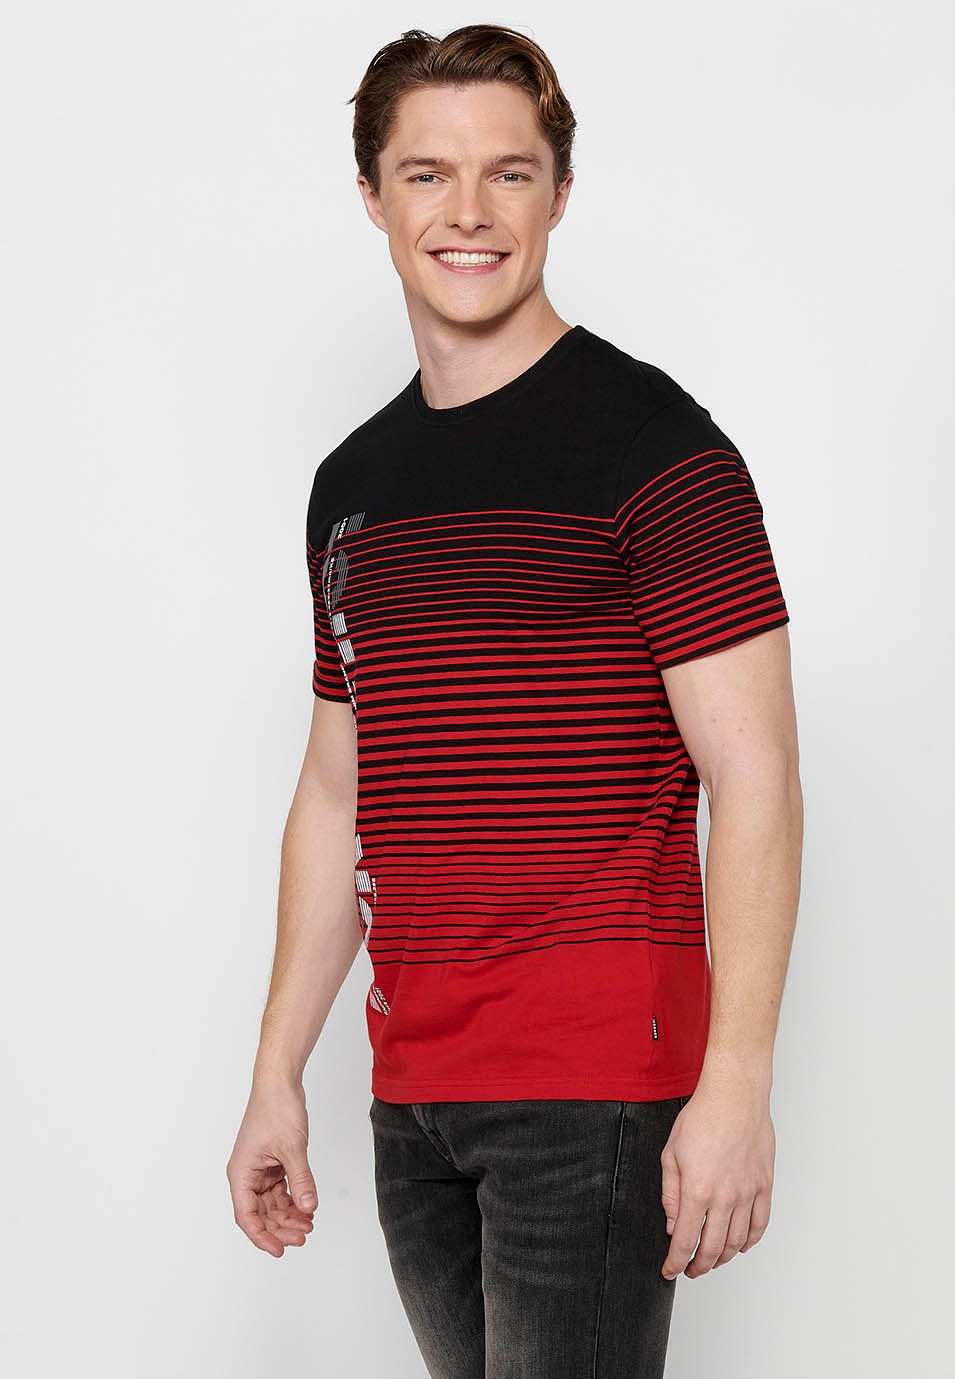 Camiseta de manga corta, estampado degradado a rayas, cuello redondo, color rojo para hombre 2